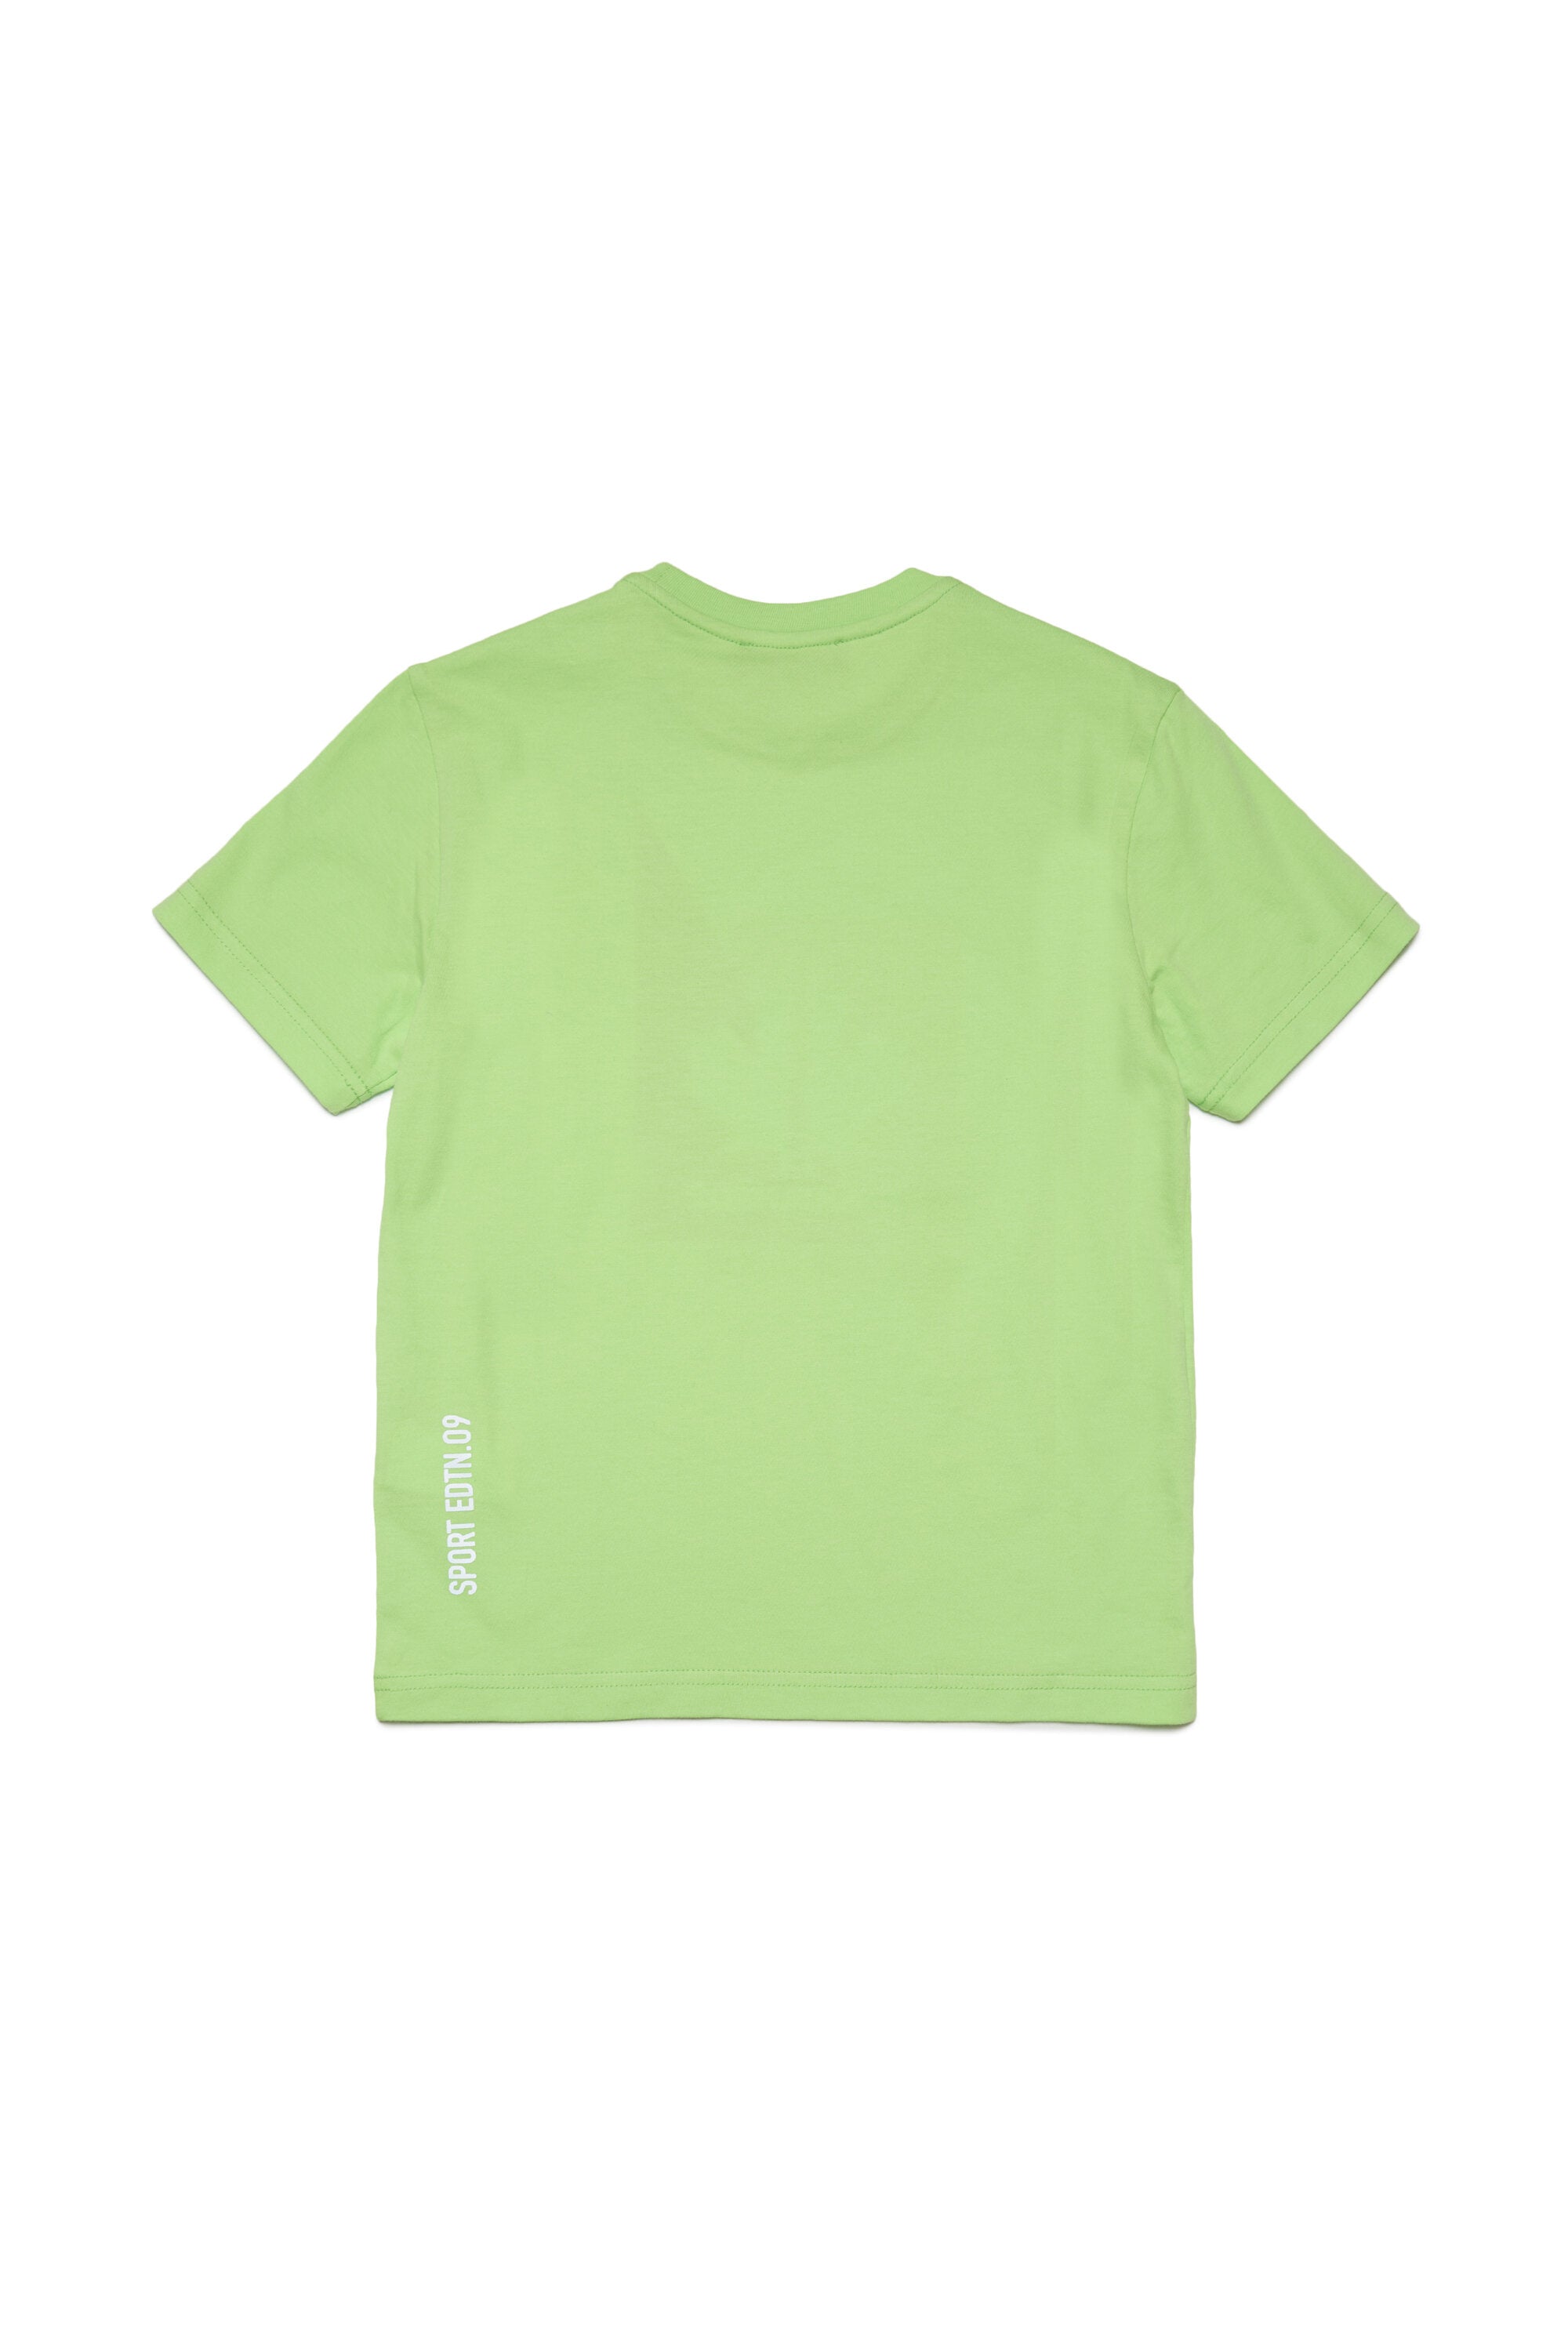 Camiseta con gráficos Leaf en dos colores